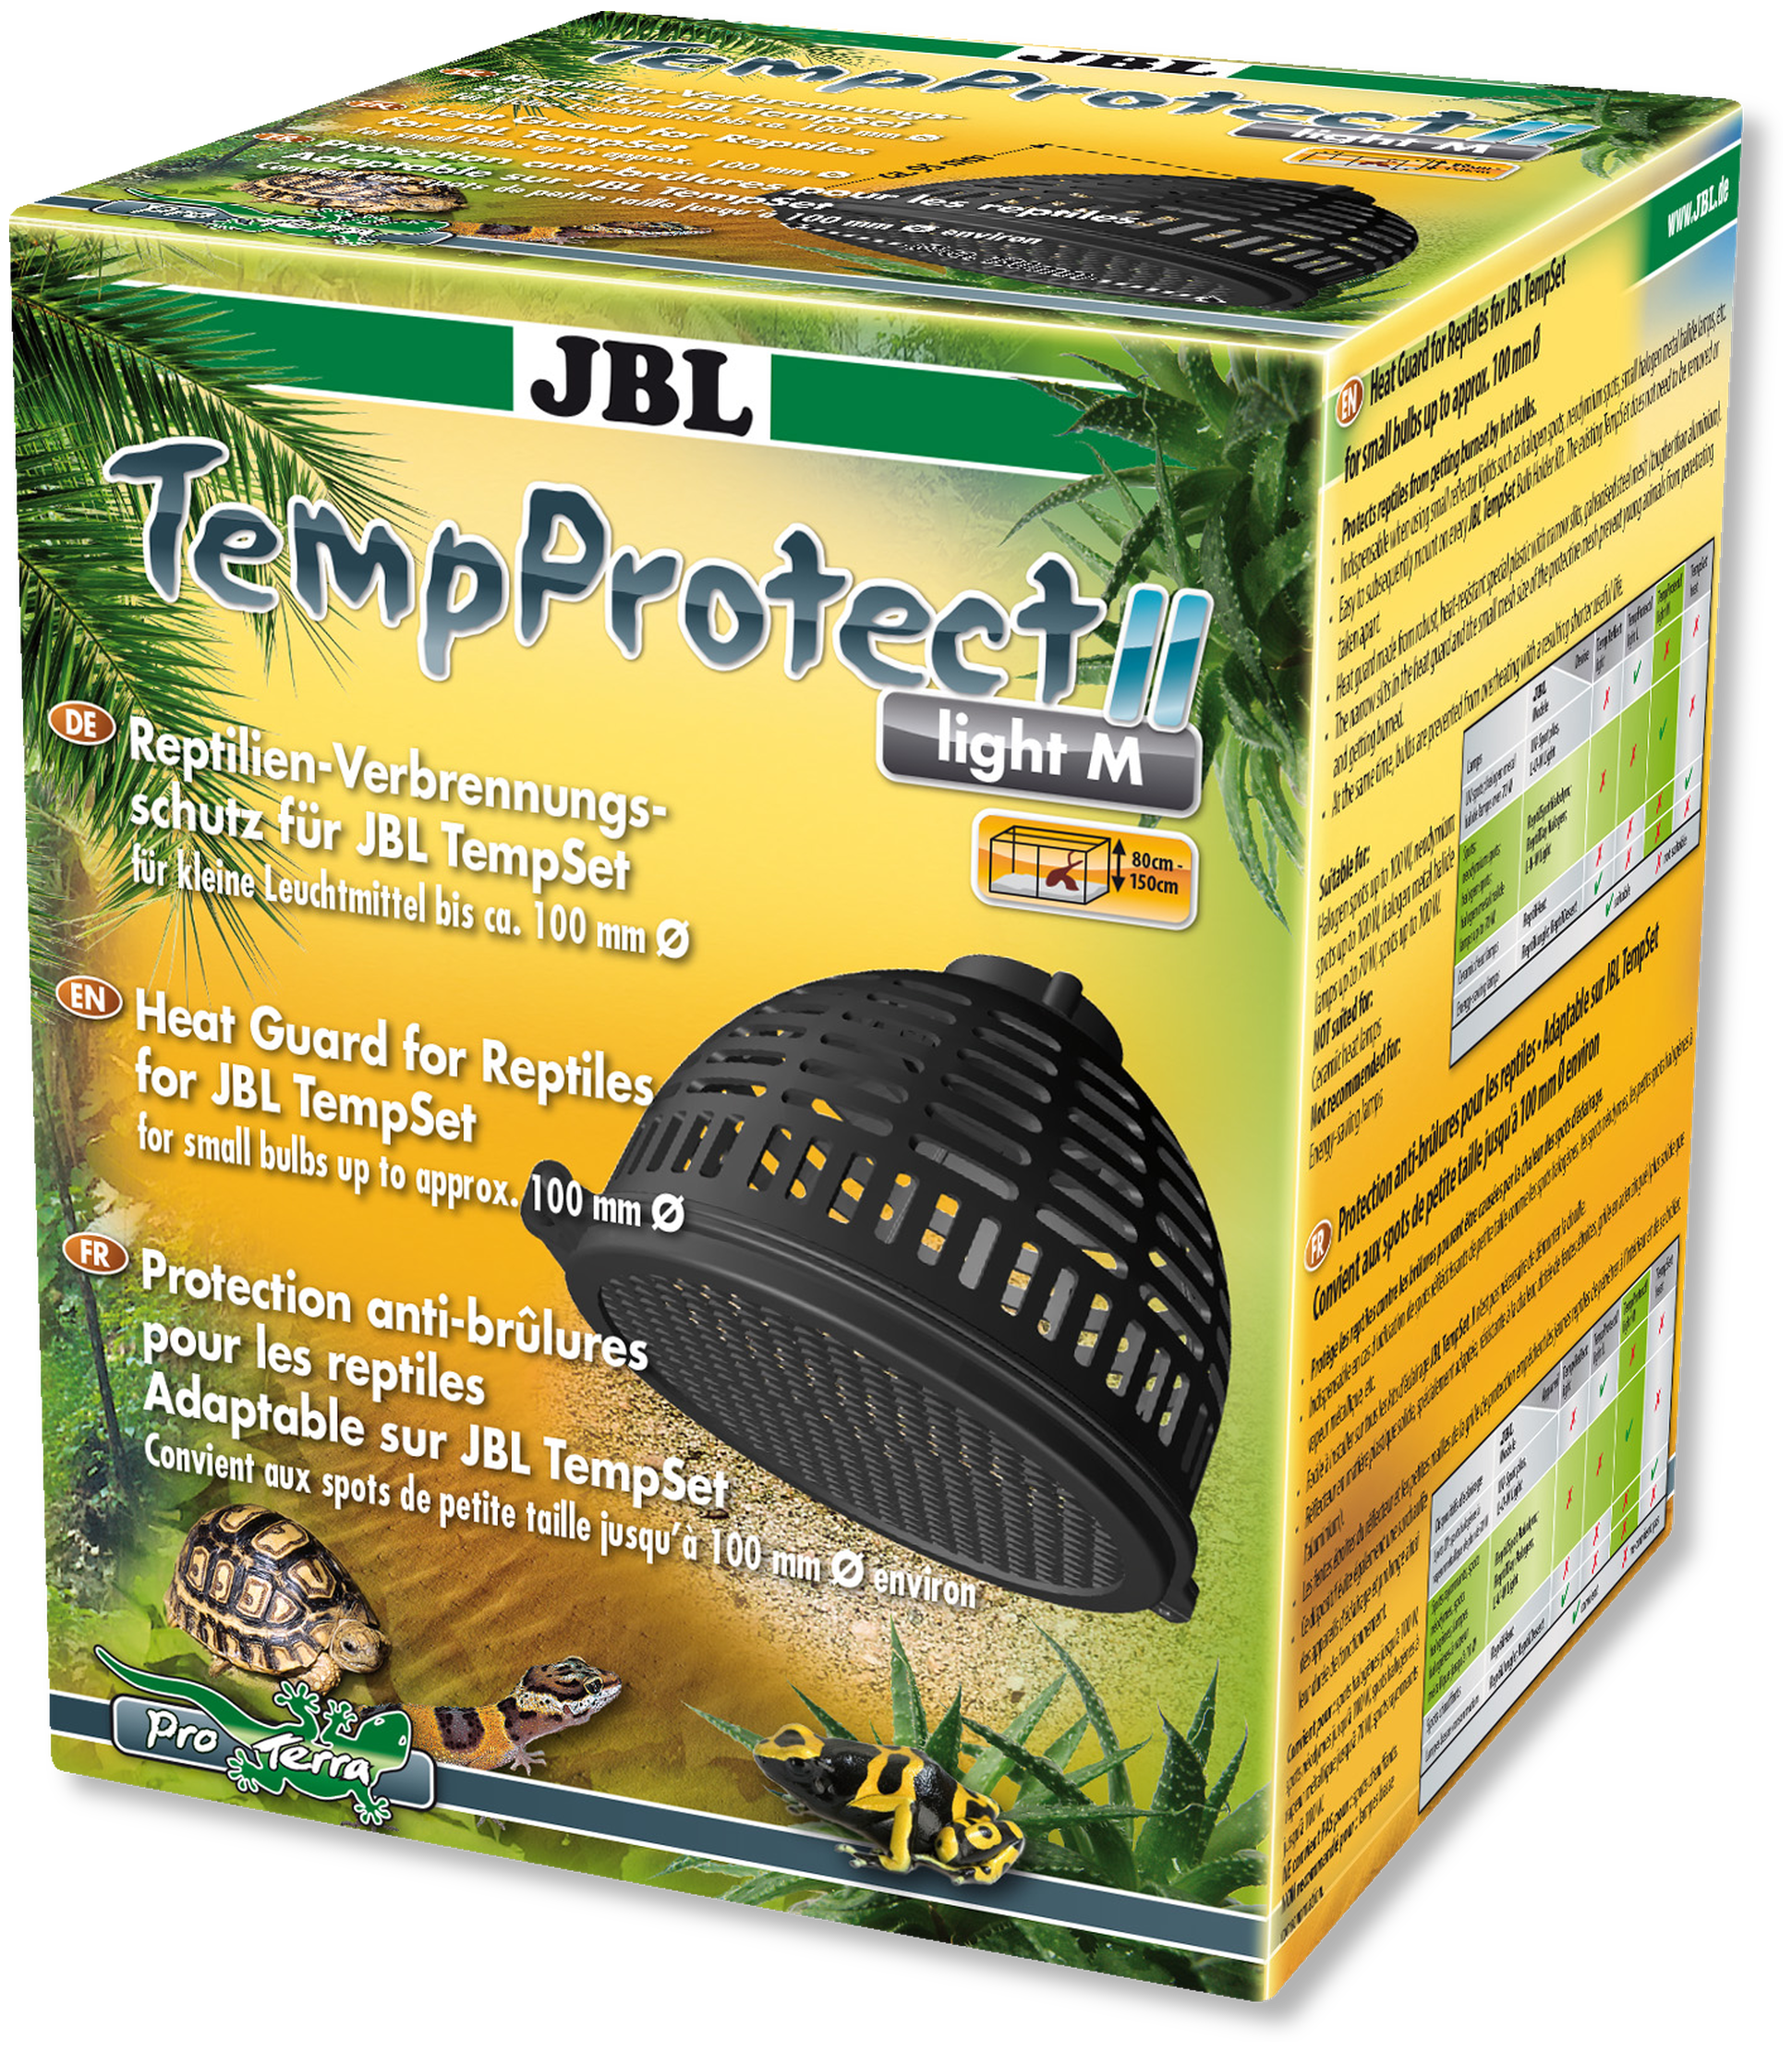 JBL TemptProtect II light M 10cm